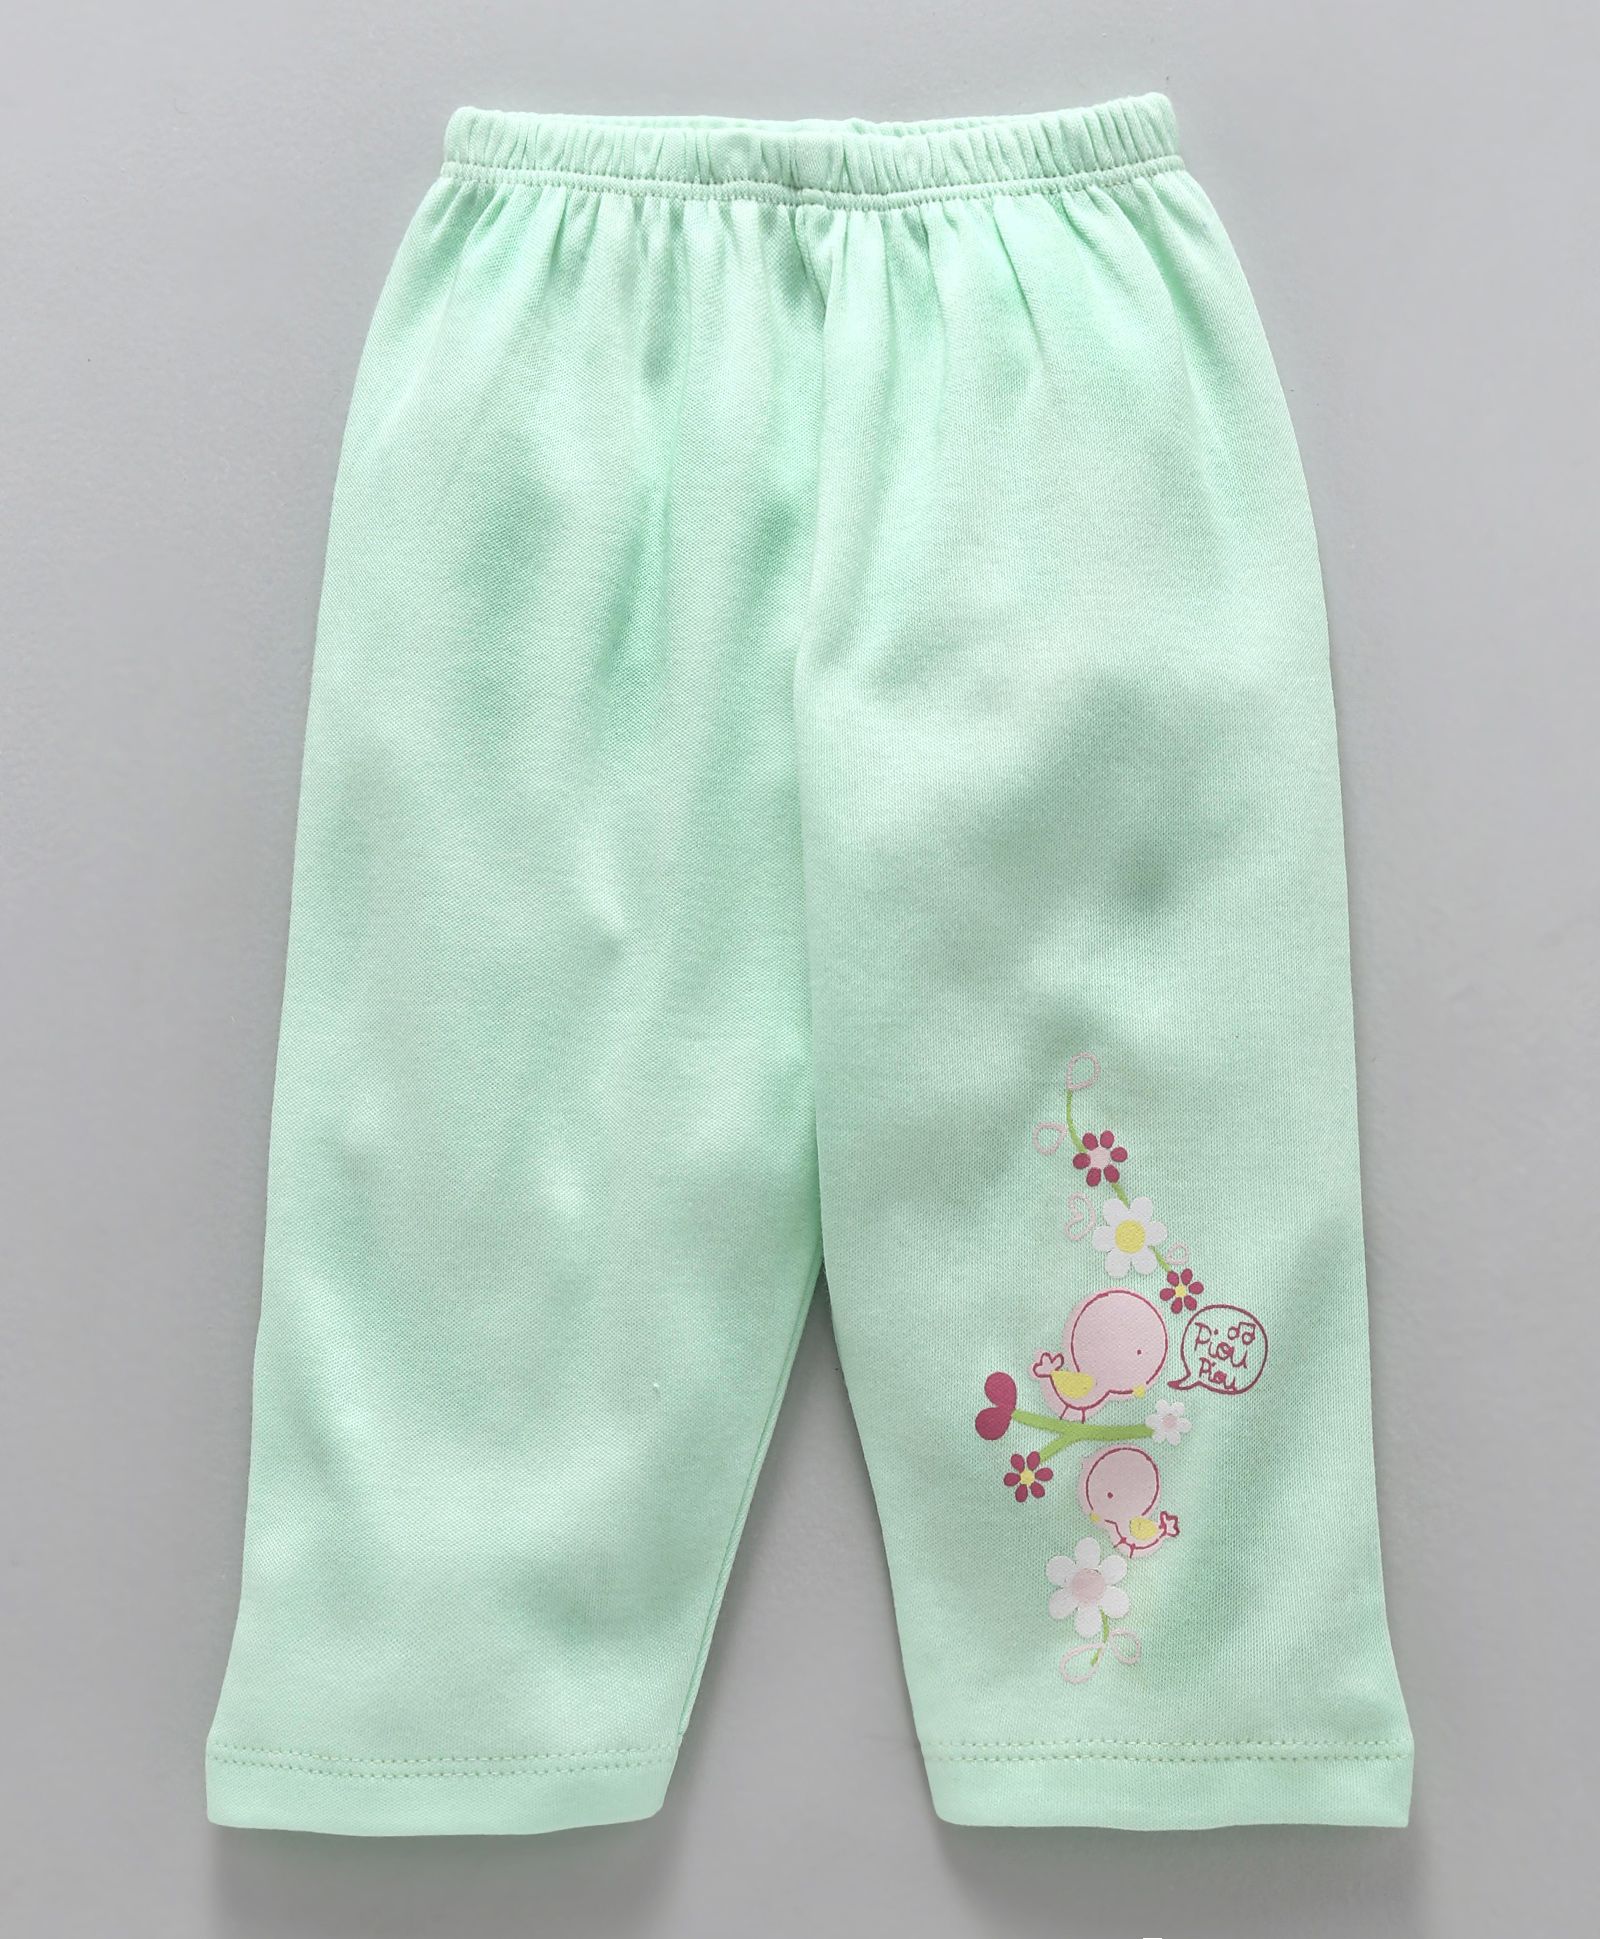 Lounge Pants Bottomwear for Girls Sleepwear